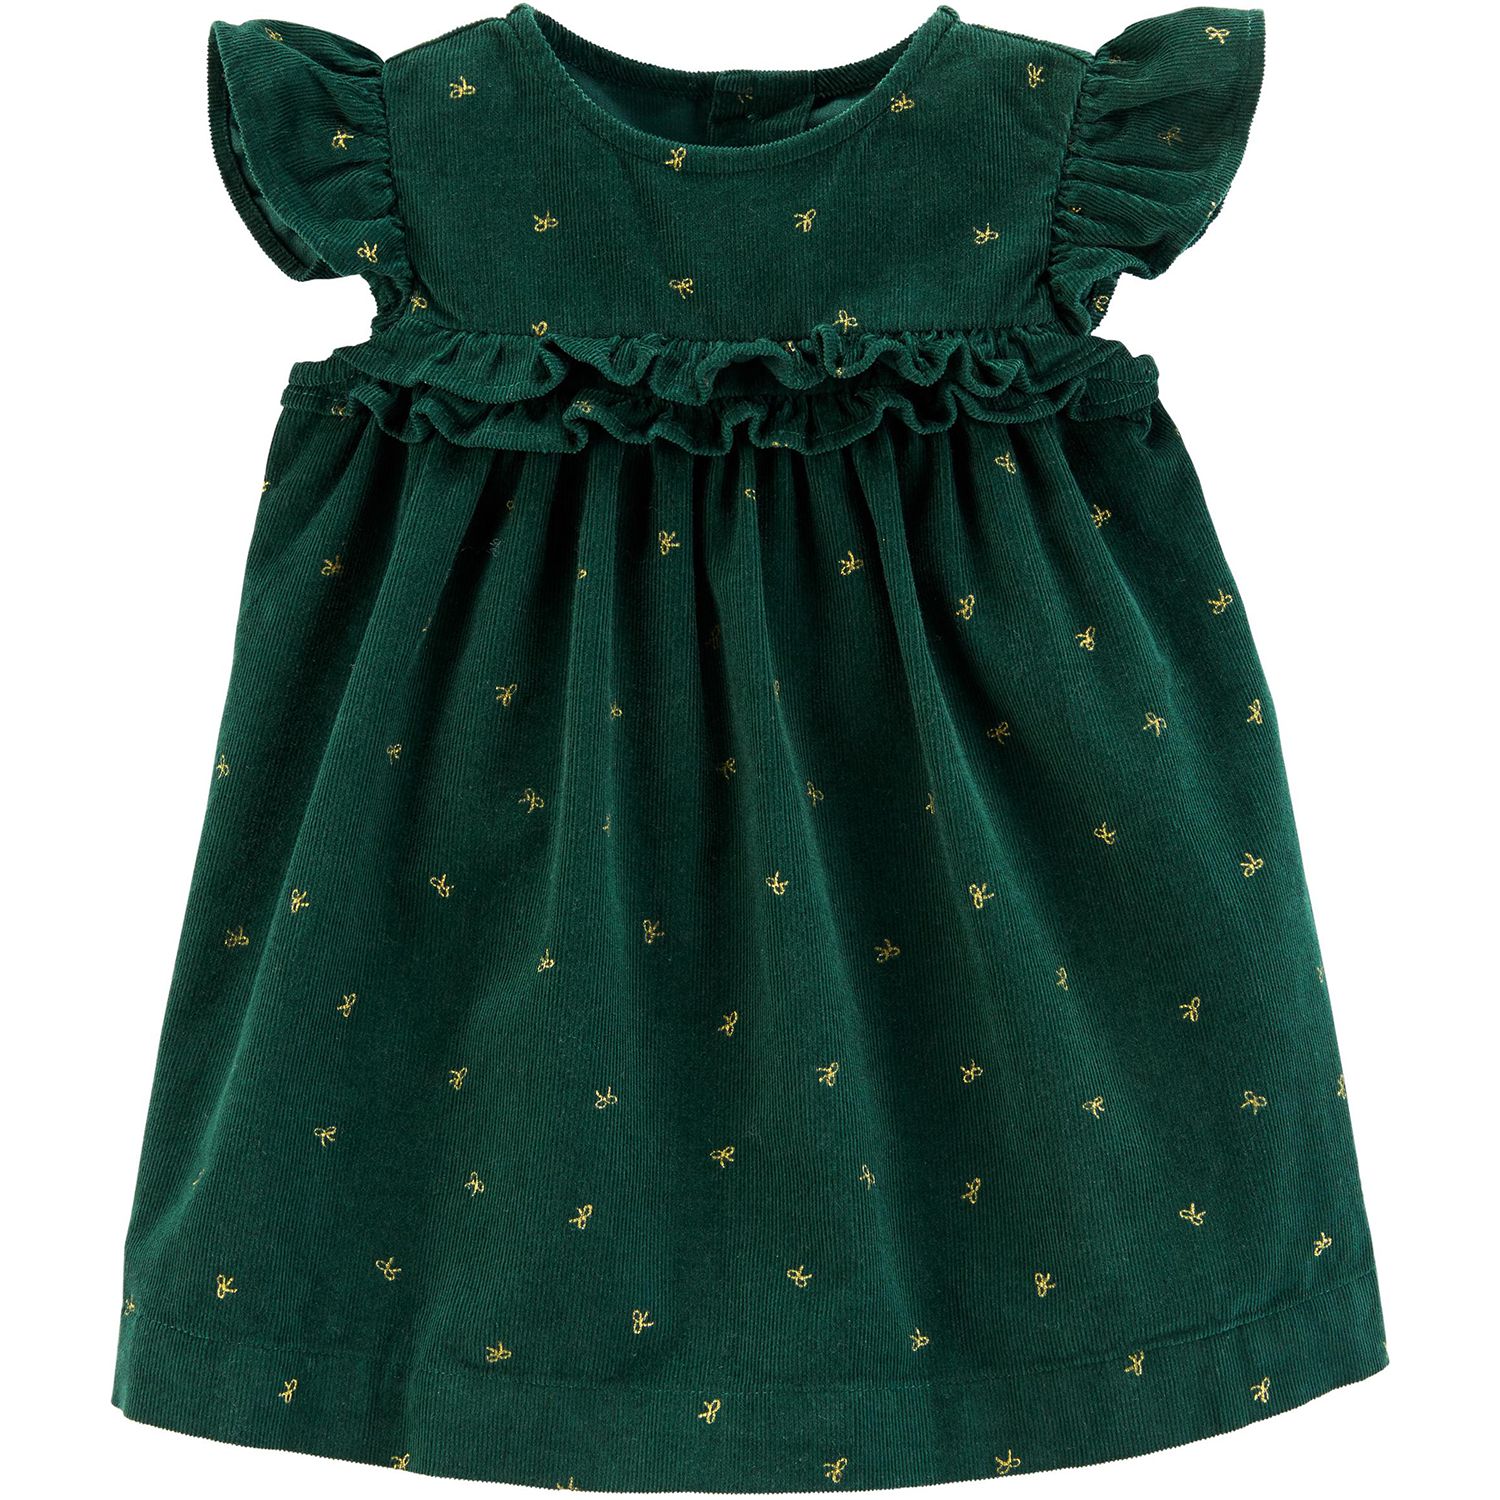 baby girl green christmas dress